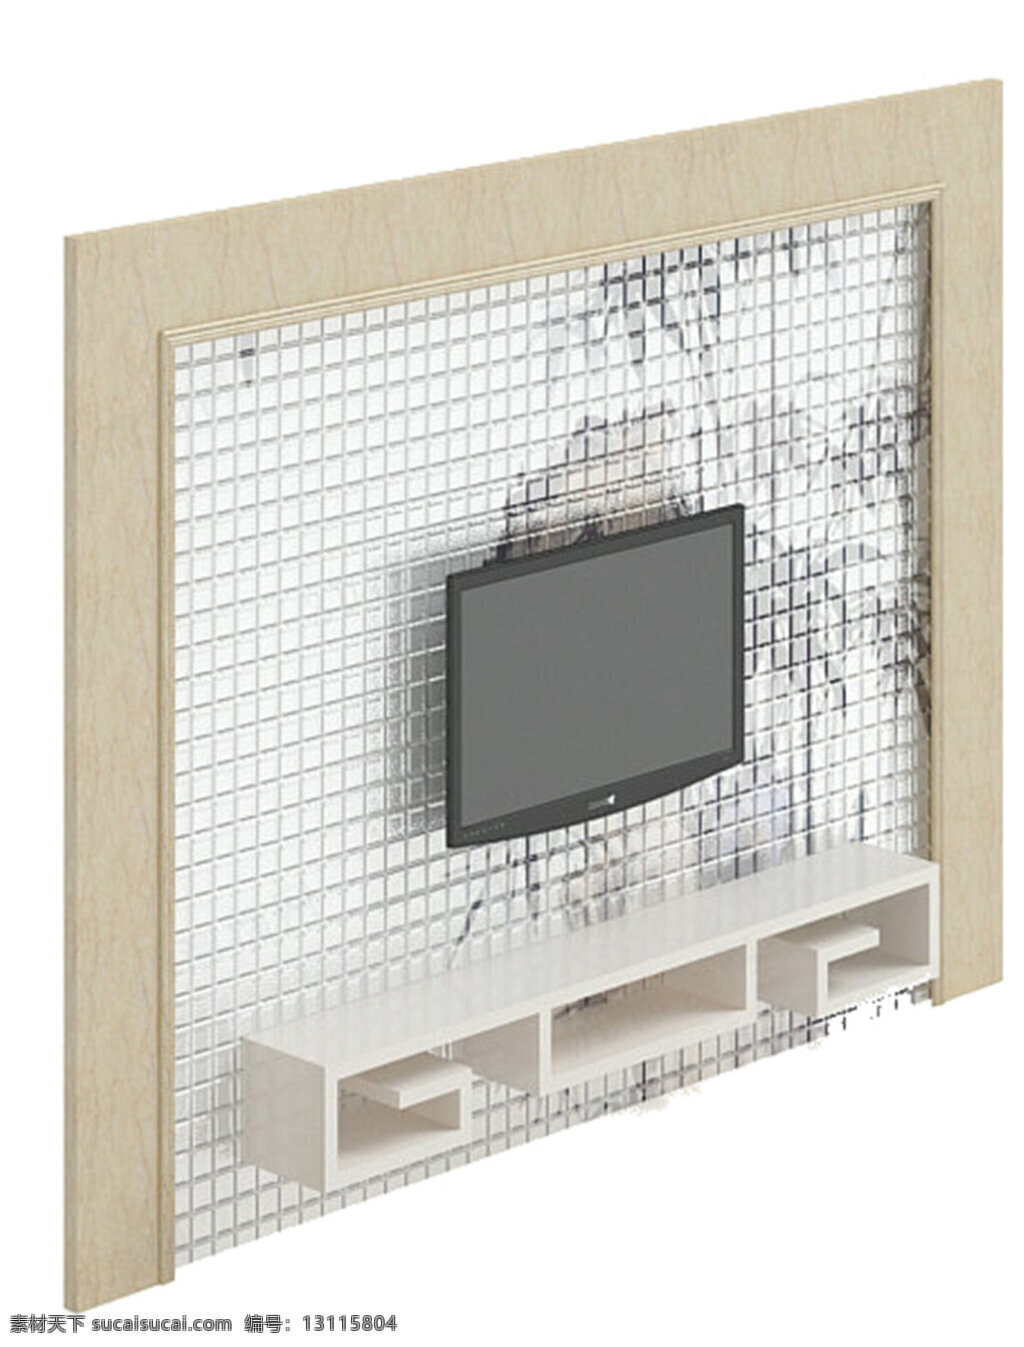 背景 墙 模板下载 素材图片 电视背景墙 3d模型 三维模型 地板 灯光 广告素材 设计模板 3d设计模型 源文件 max 白色